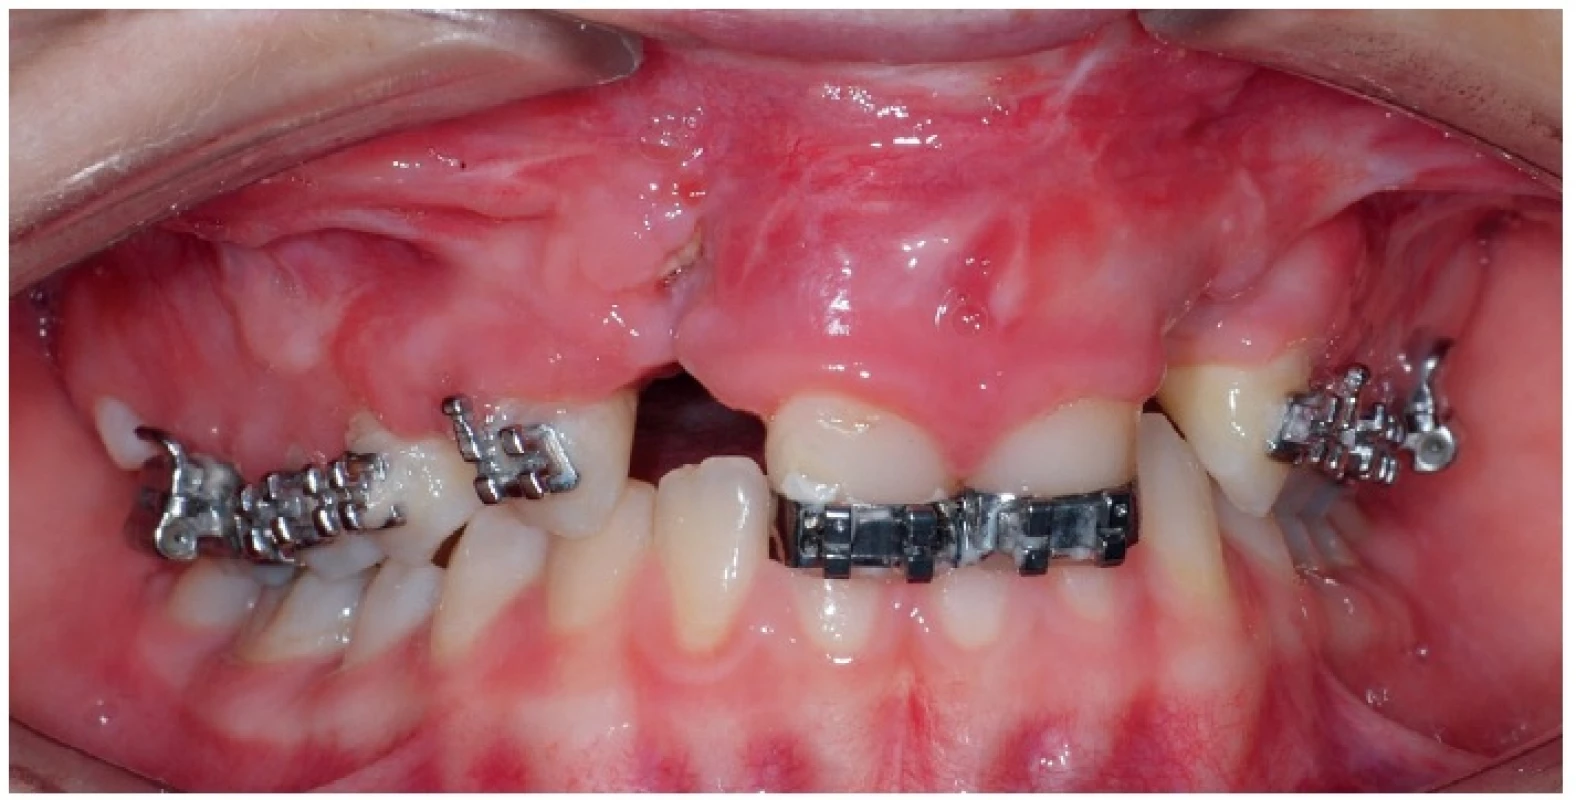 Příklad možných komplikací po chirurgické rekonstrukci alveolárního výběžku u dvanáctileté pacientky s oboustranným celkovým rozštěpem – 3 měsíce po výkonu je v místě operce viditelná malá dehiscence a zánět měkkých tkání, dochází k částečnému odhojování doplněného kostního materiálu. Fixní ortodontický aparát slouží pro stabilizaci čelistních segmentů, není prováděna aktivní ortodontická terapie. Pro účely fotodokumentace byl sejmut ortodontický oblouk